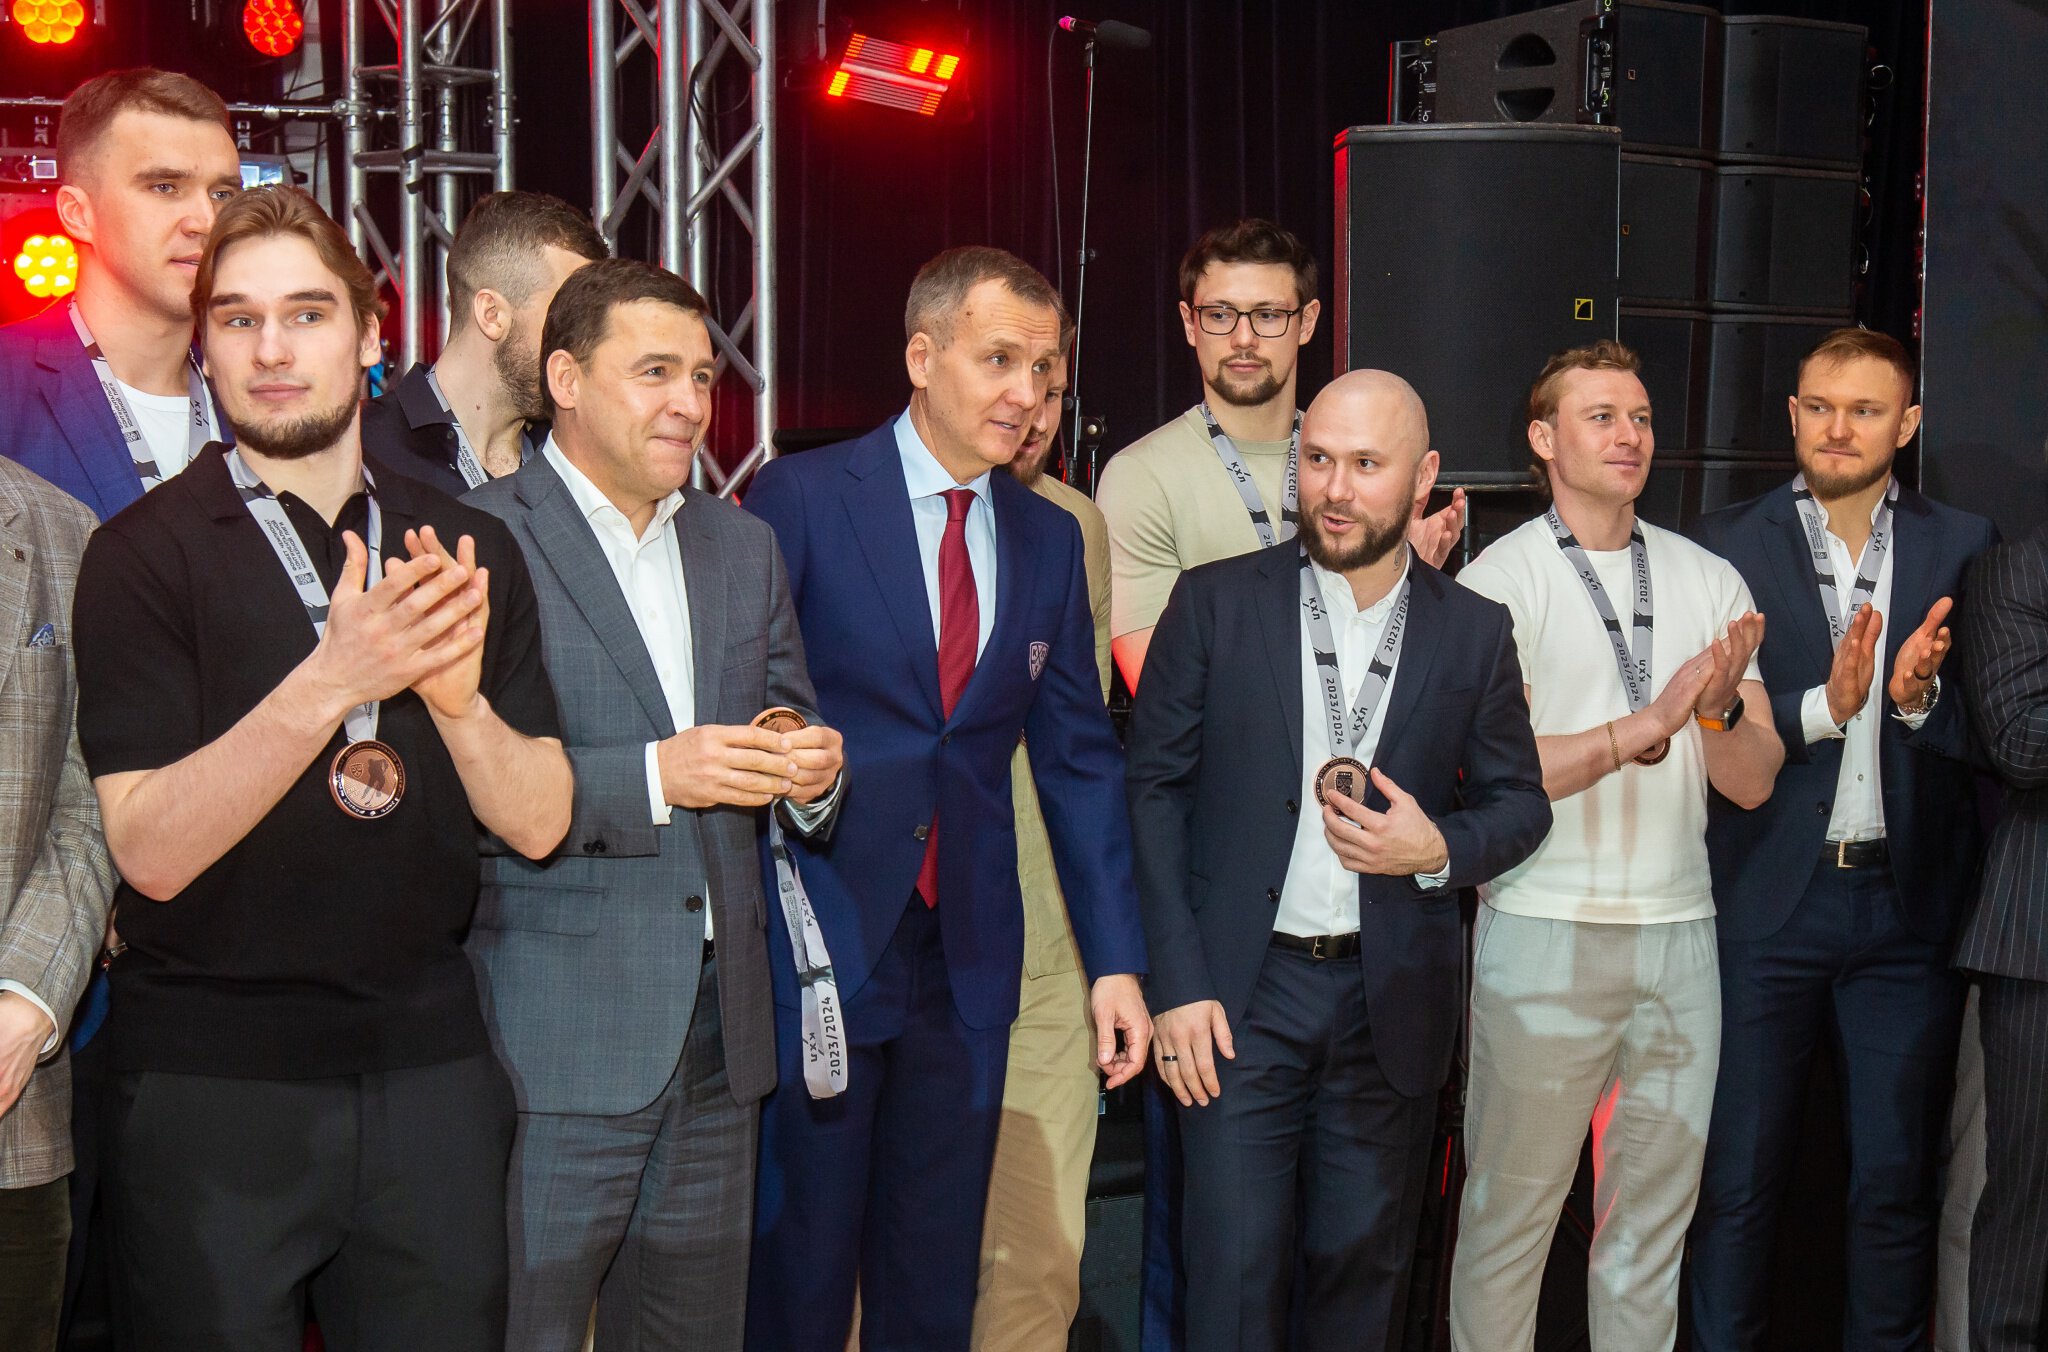 Вице-президент КХЛ Точицкий и губернатор Куйвашев наградили Автомобилист бронзовыми медалями. Это лучший результат в истории клуба